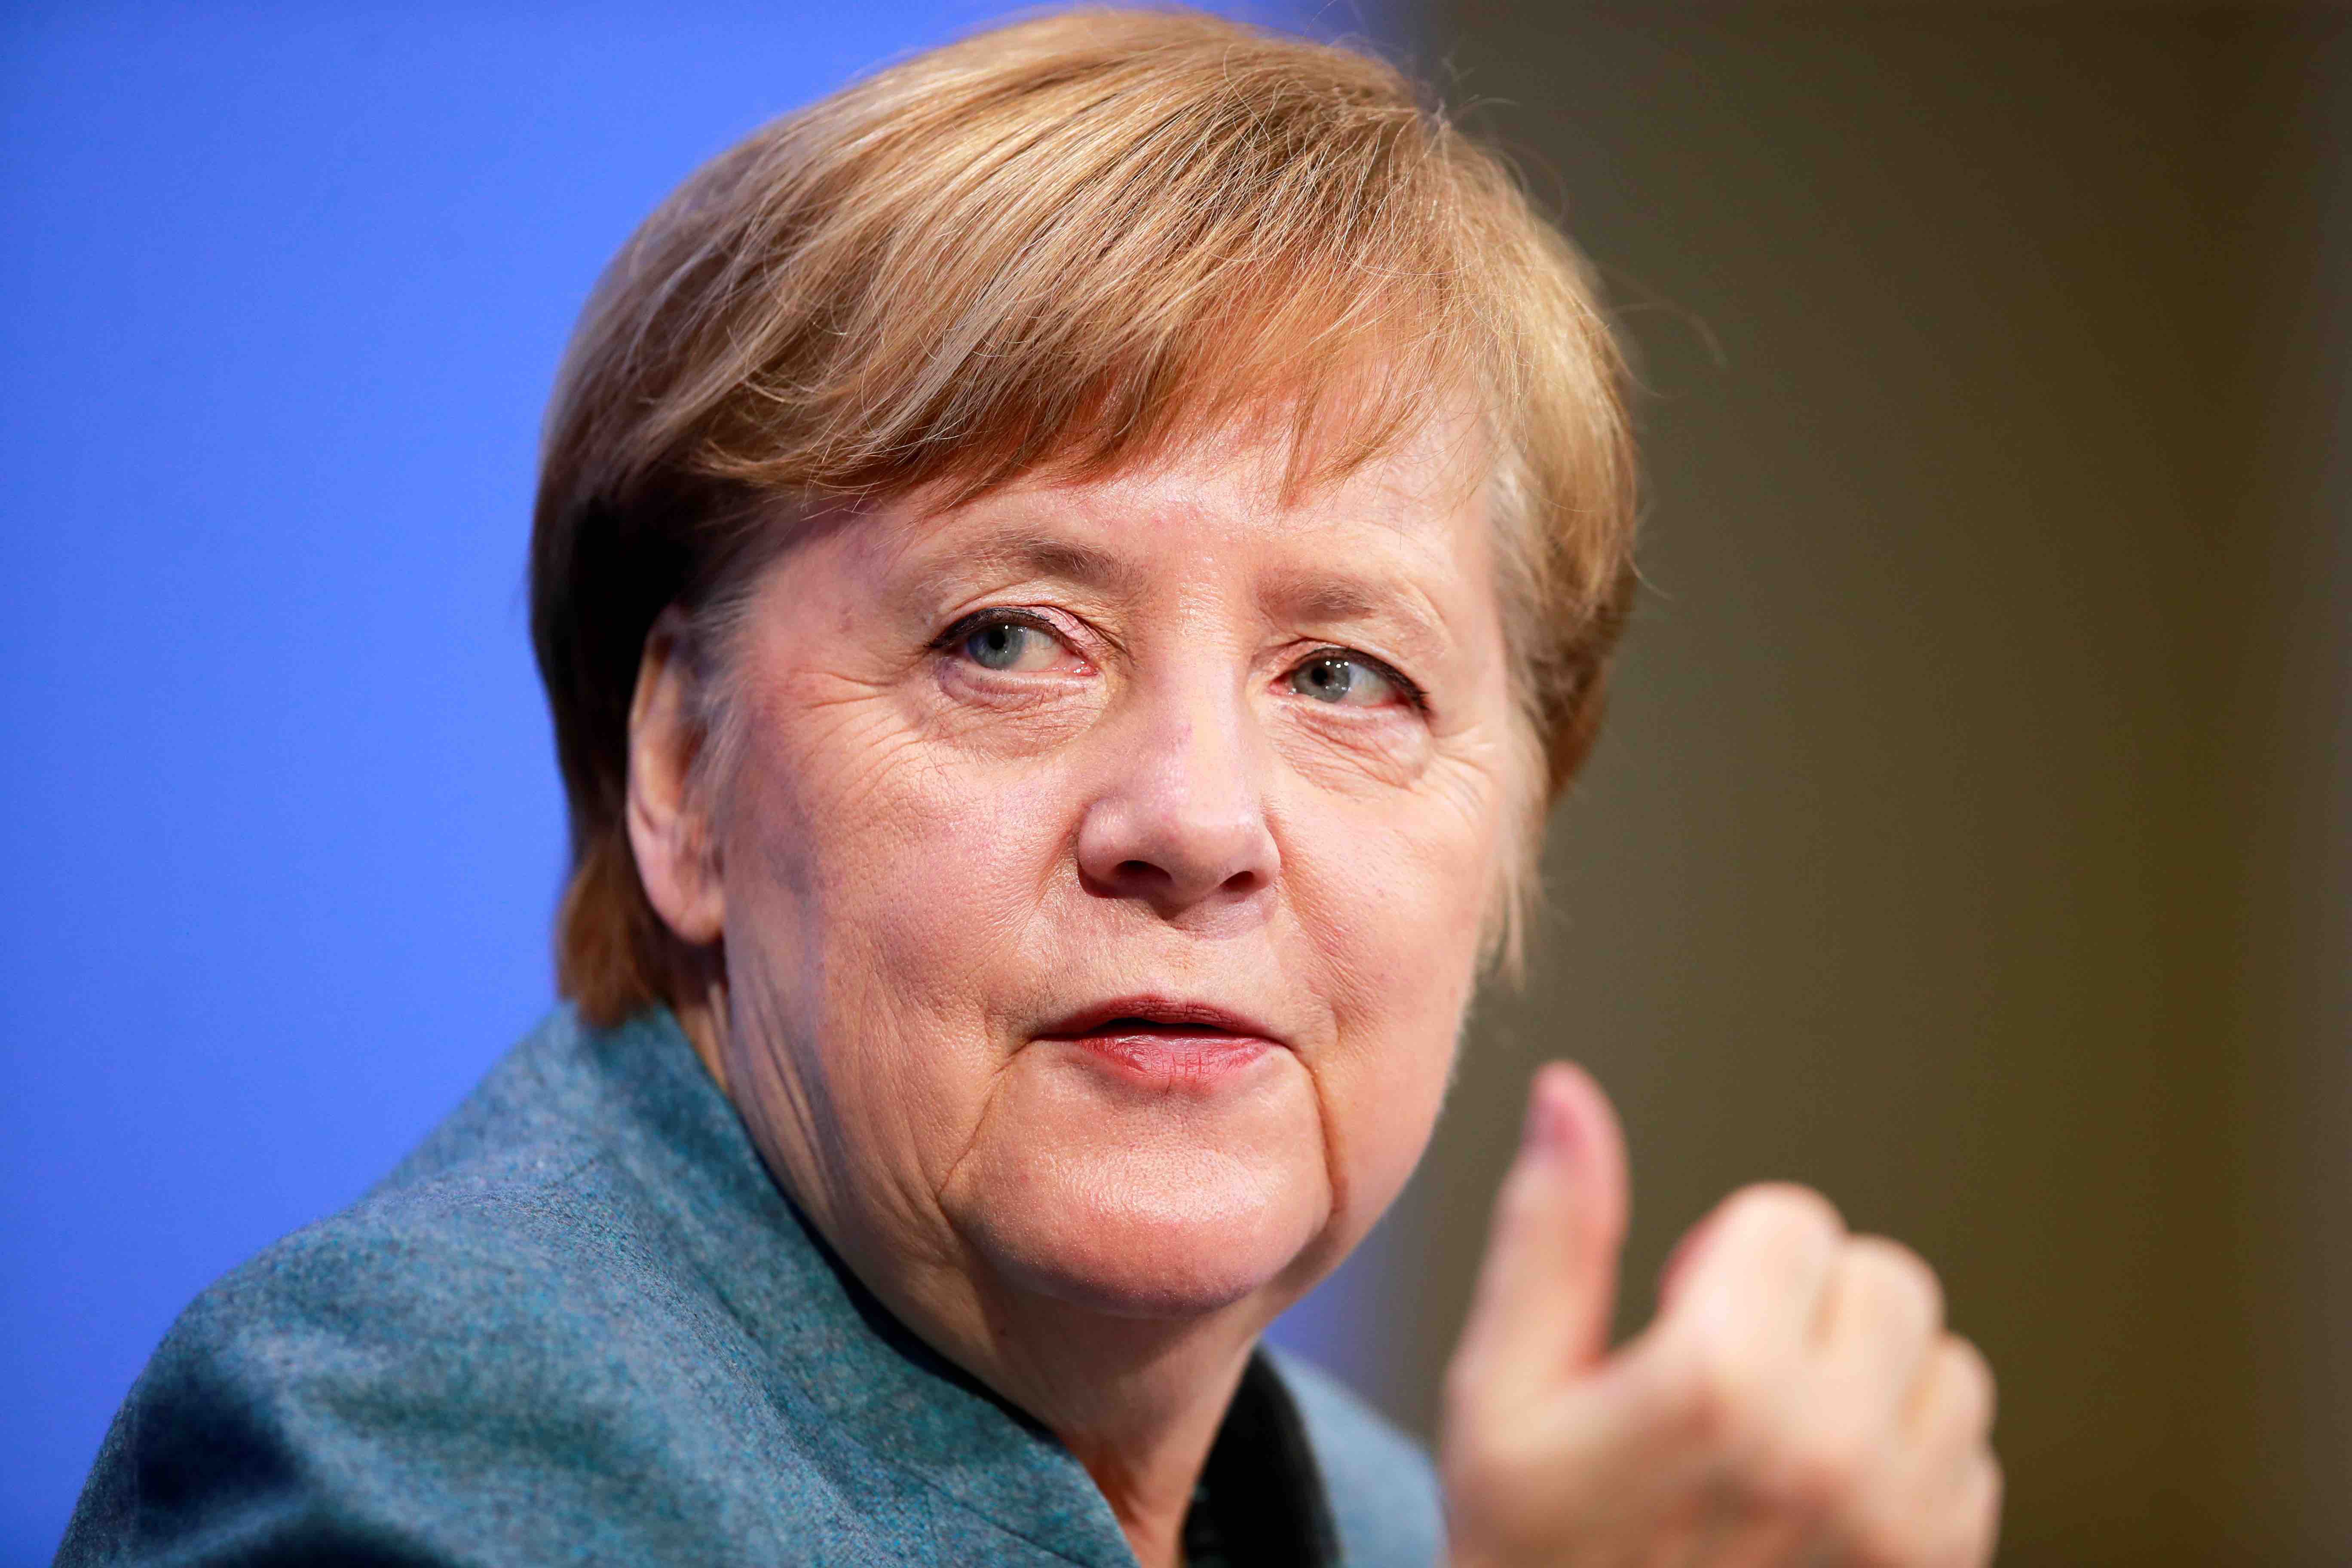 20210302-image-dpa-mb-Angela Merkel